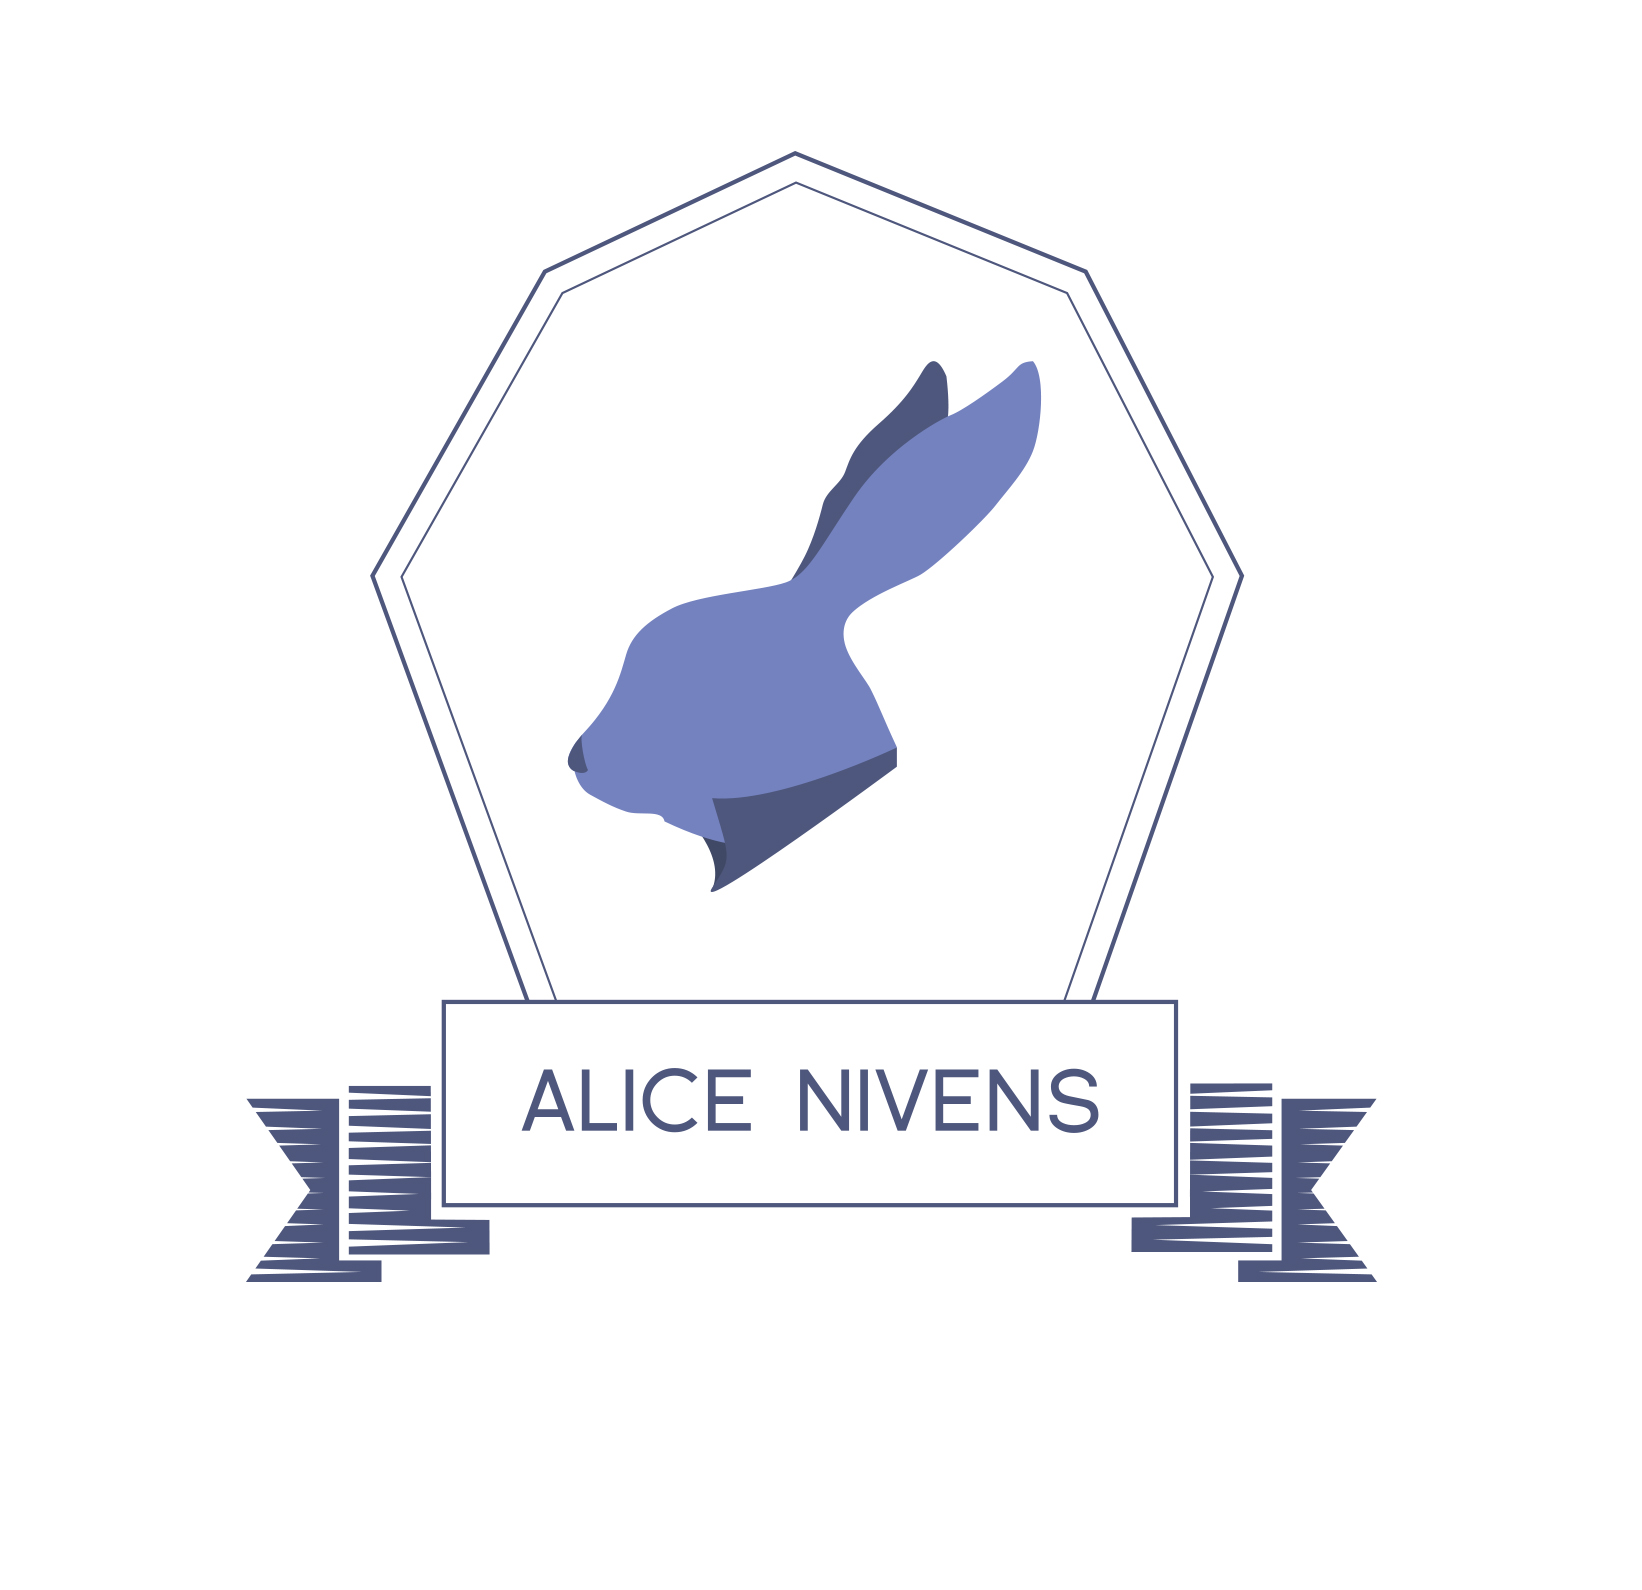 Alice Nivens Cafe